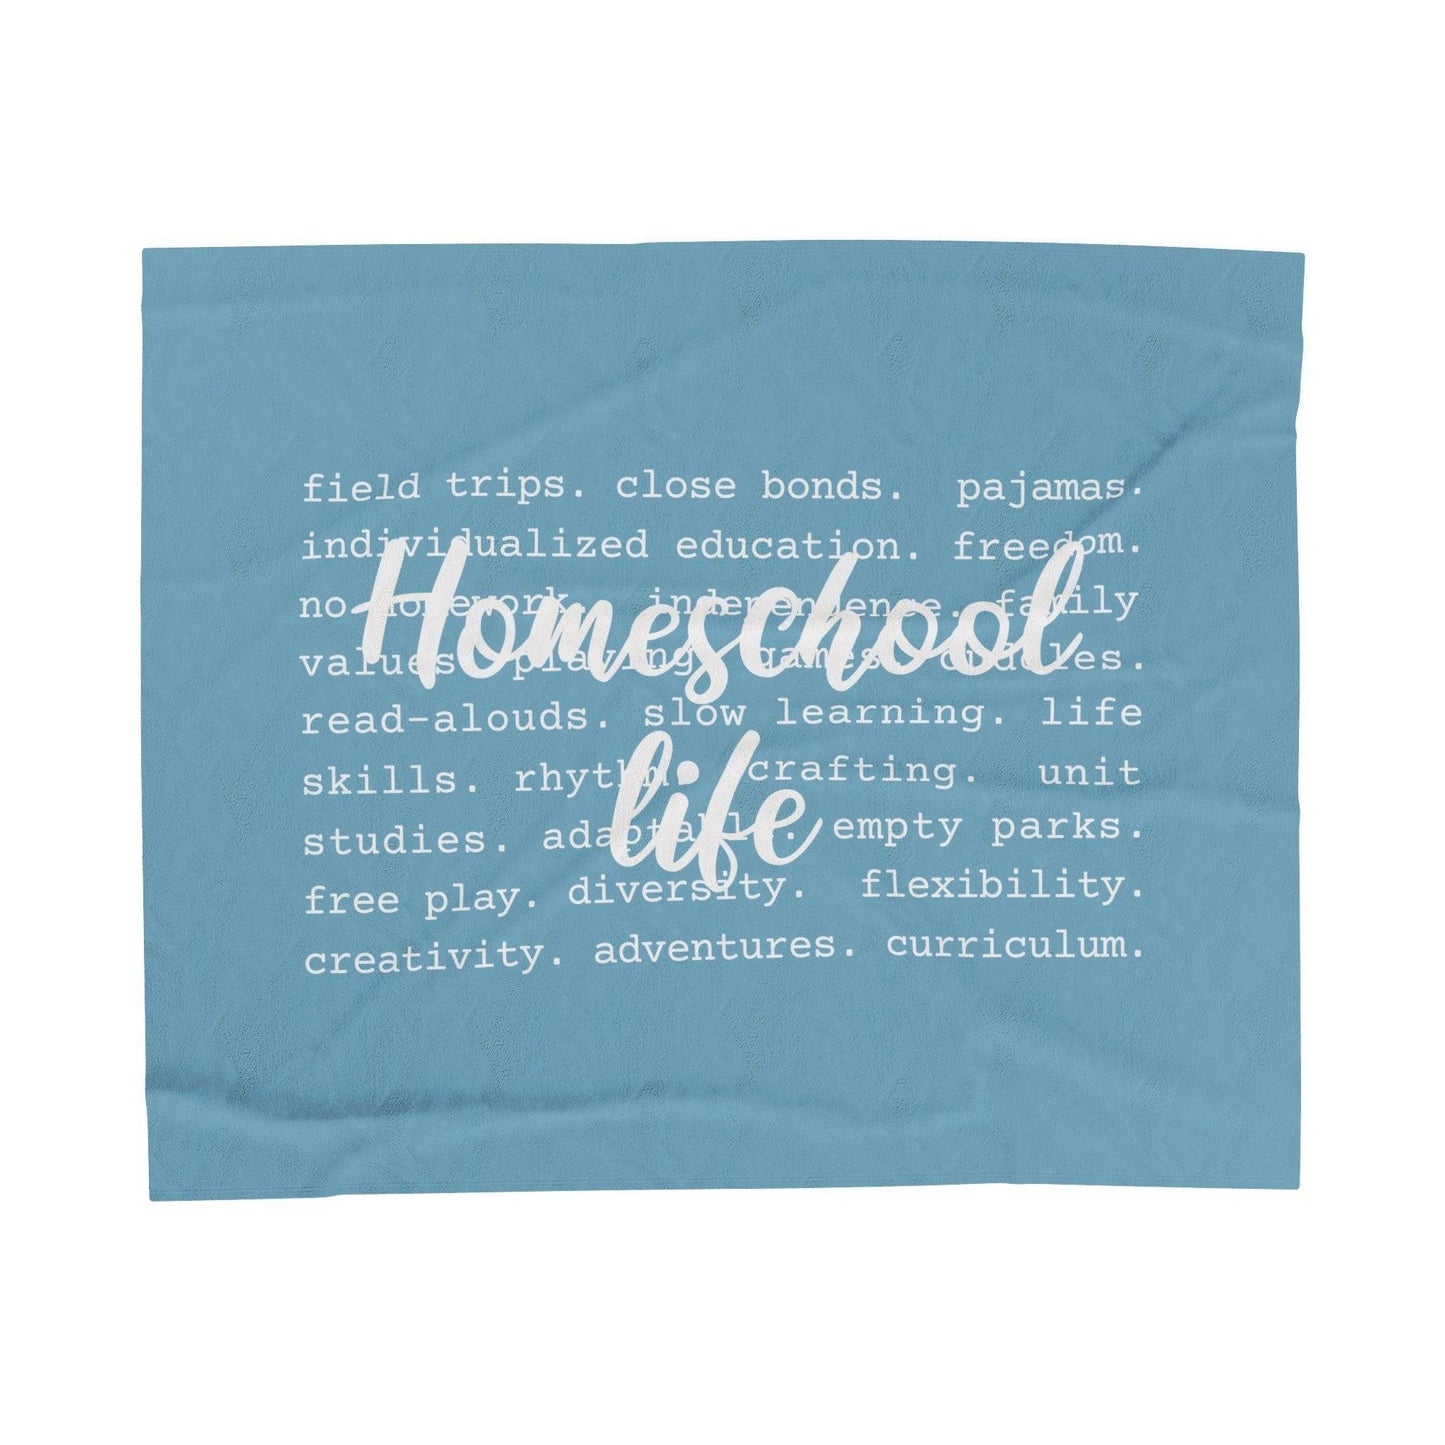 Homeschool Life Plush Blanket in Light Blue and White